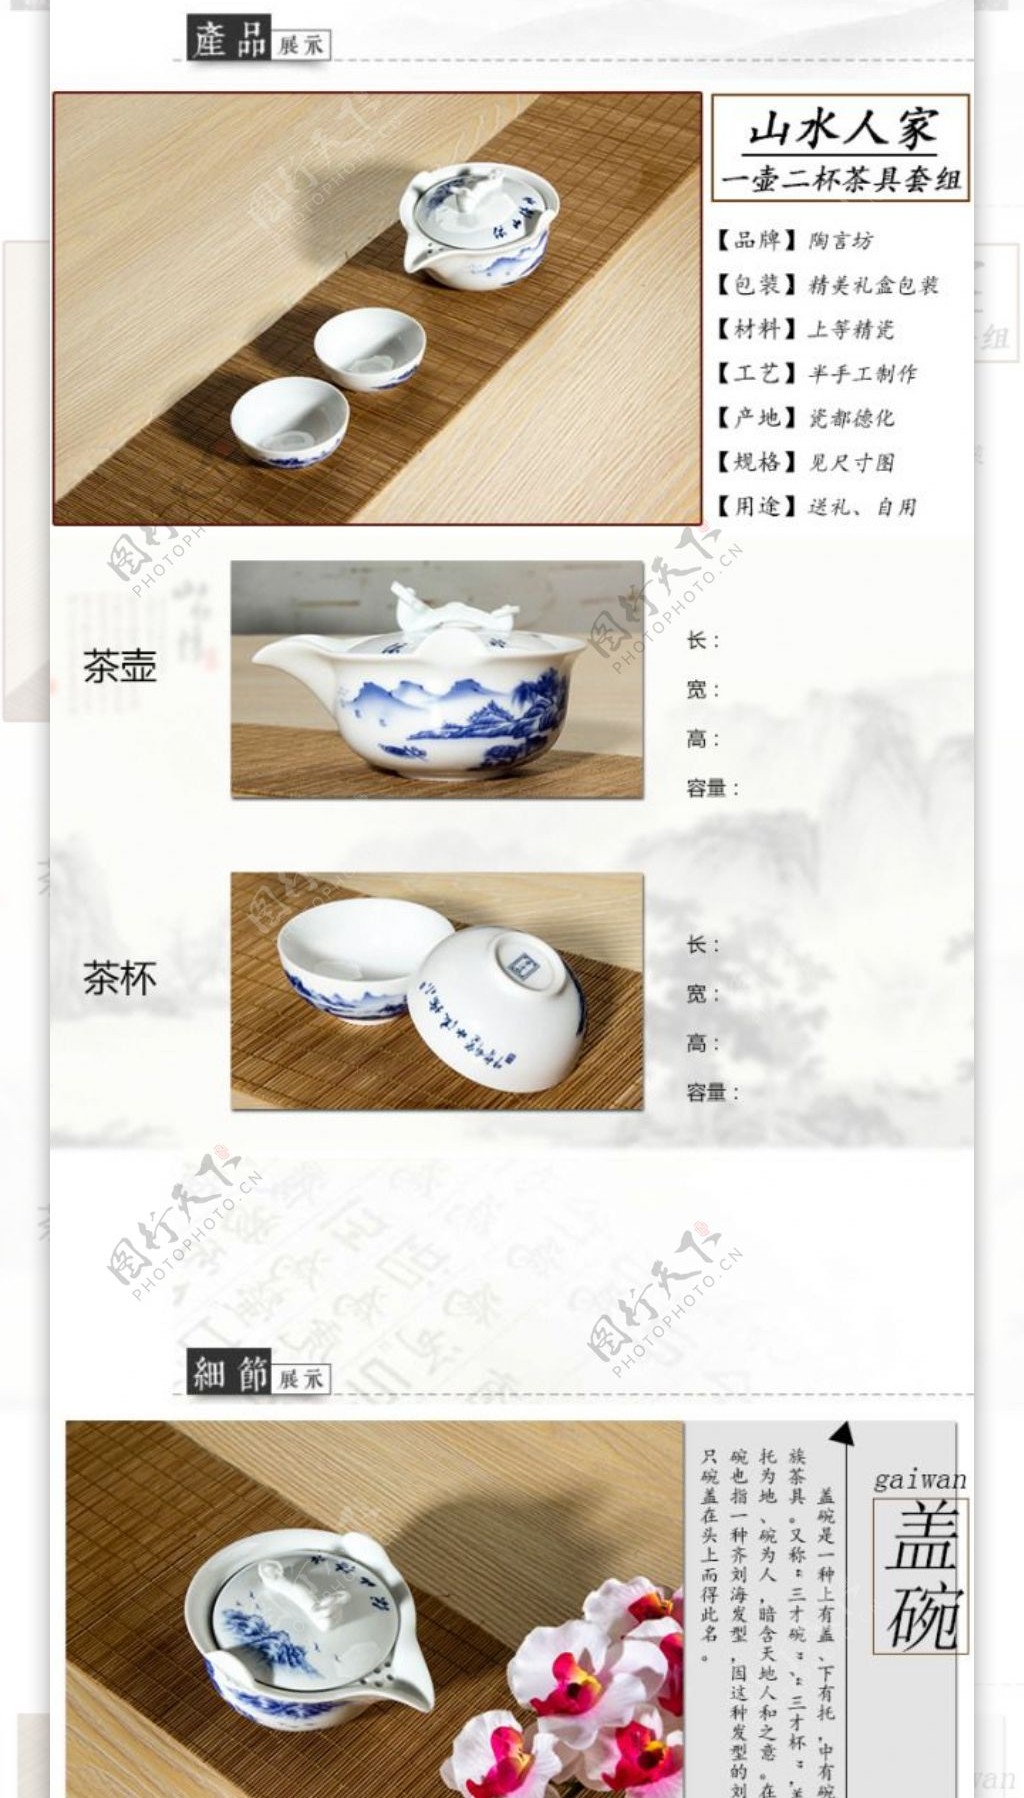 原创清白玉瓷福建德化山水人家系列茶具套装